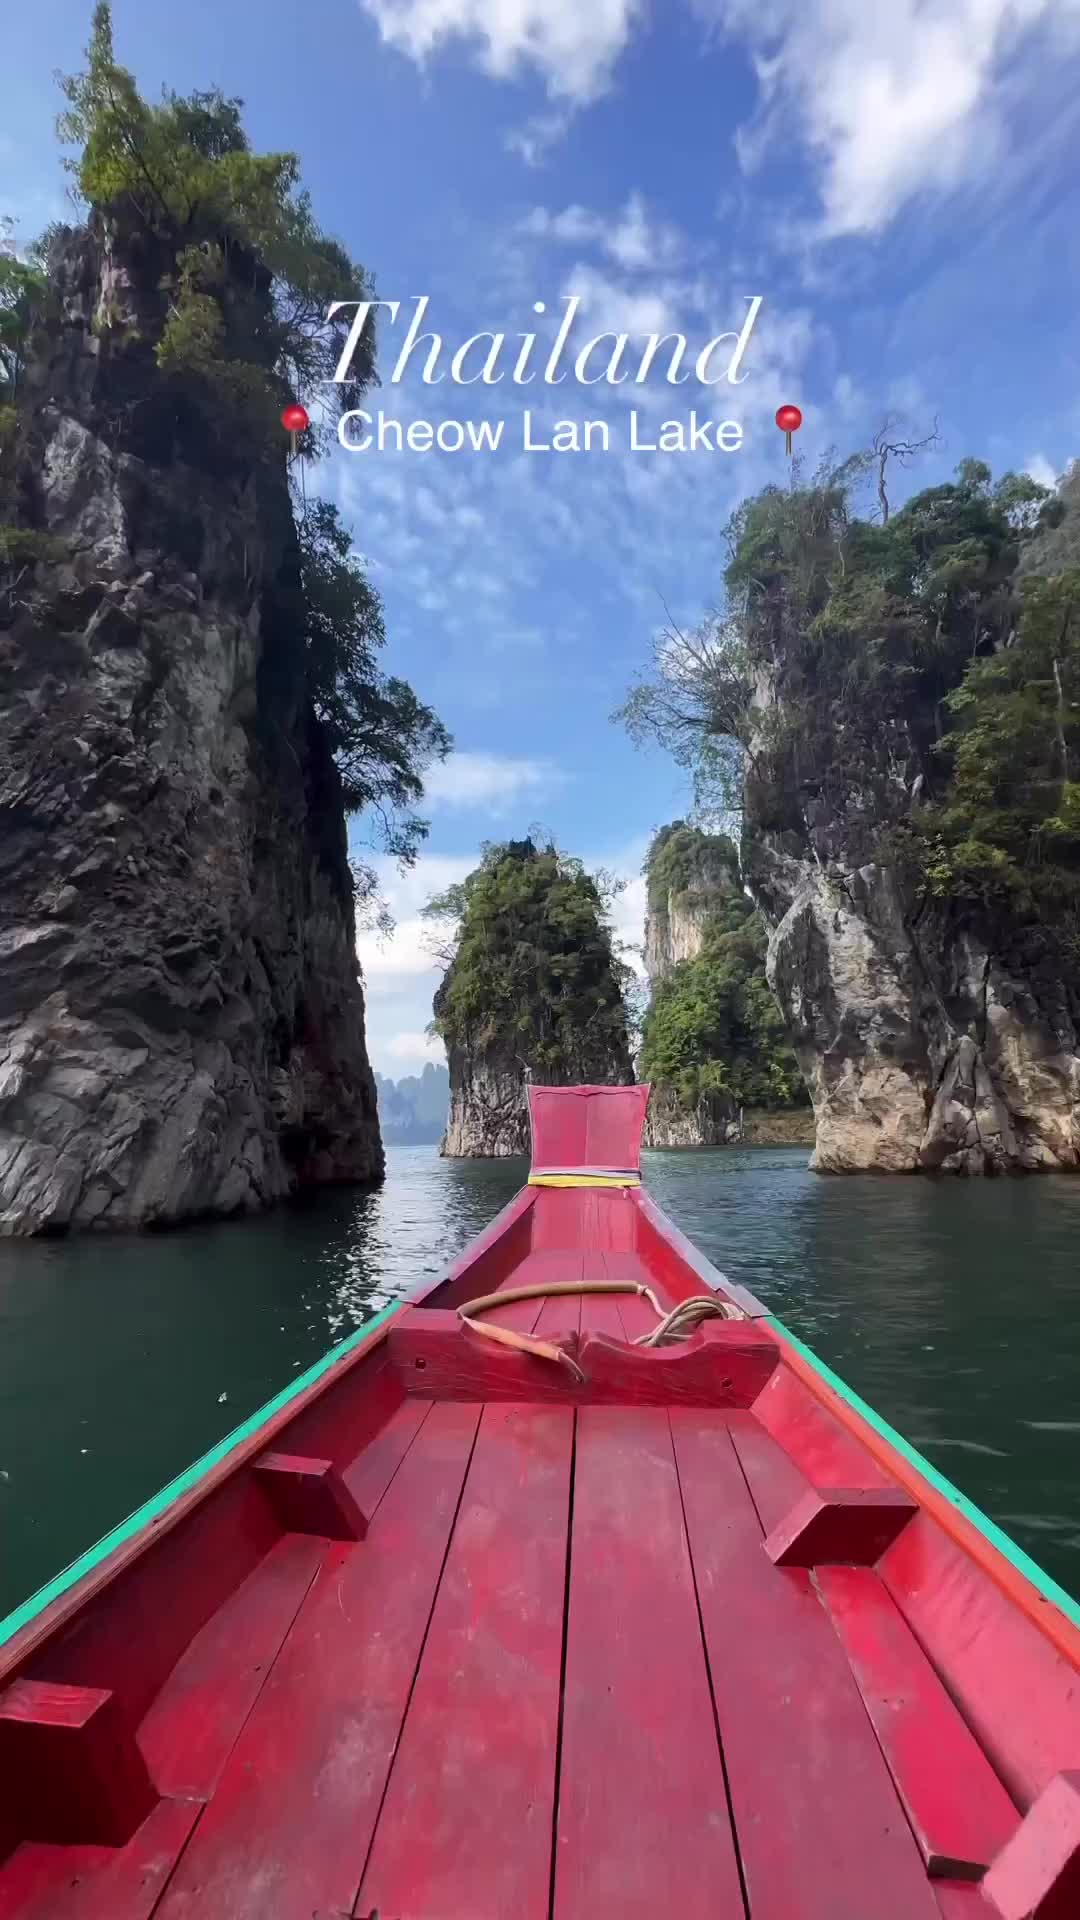 Stunning Scenery at Cheow Lan Lake Near Phuket